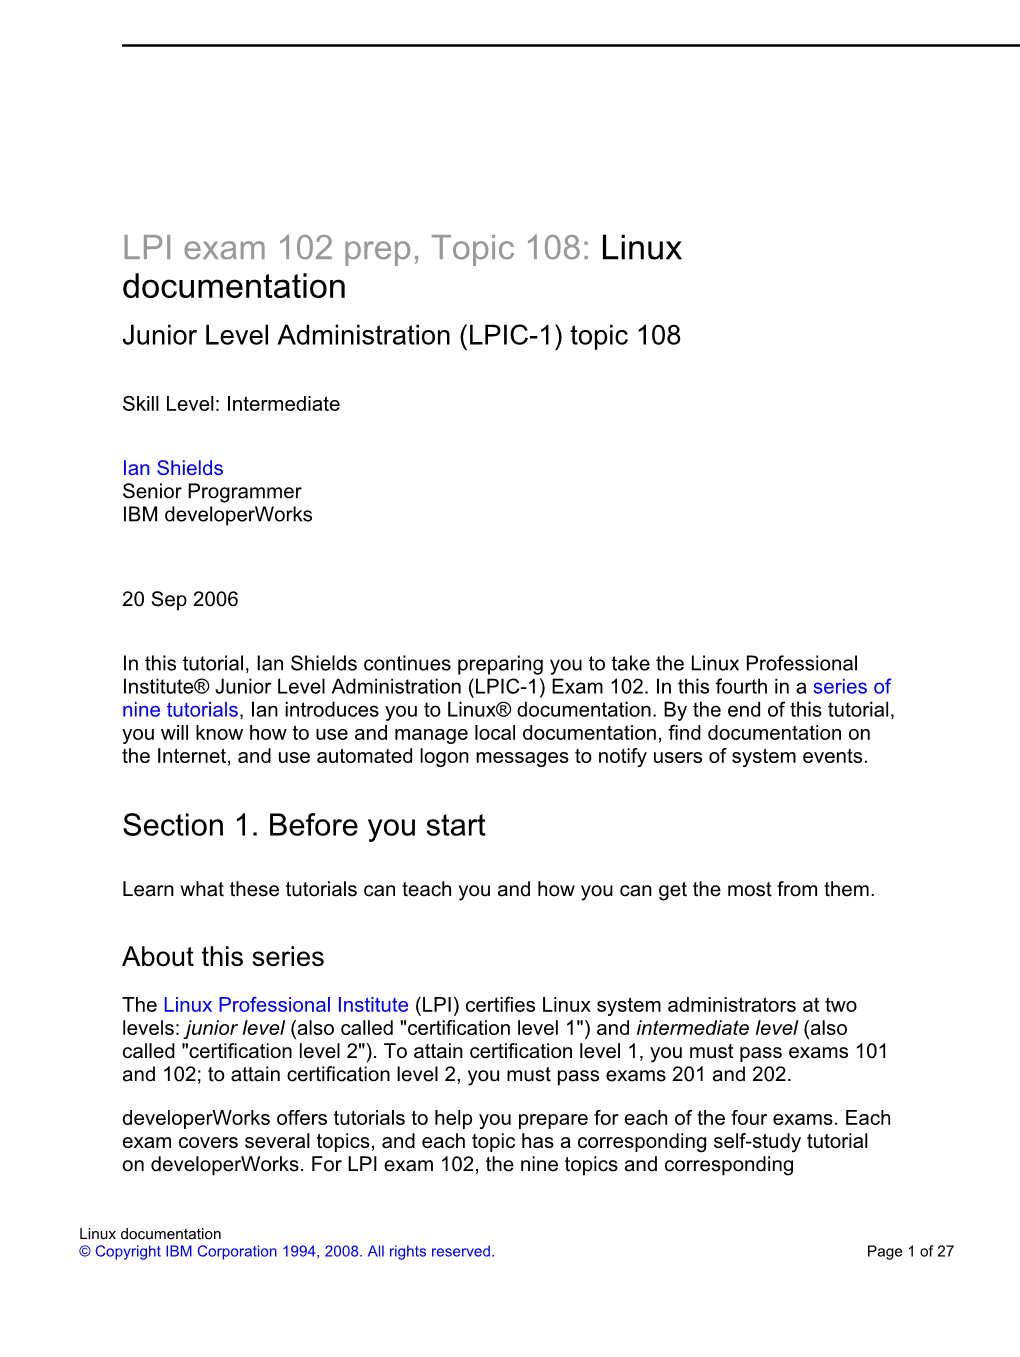 LPI Exam 102 Prep, Topic 108: Linux Documentation Junior Level Administration (LPIC-1) Topic 108